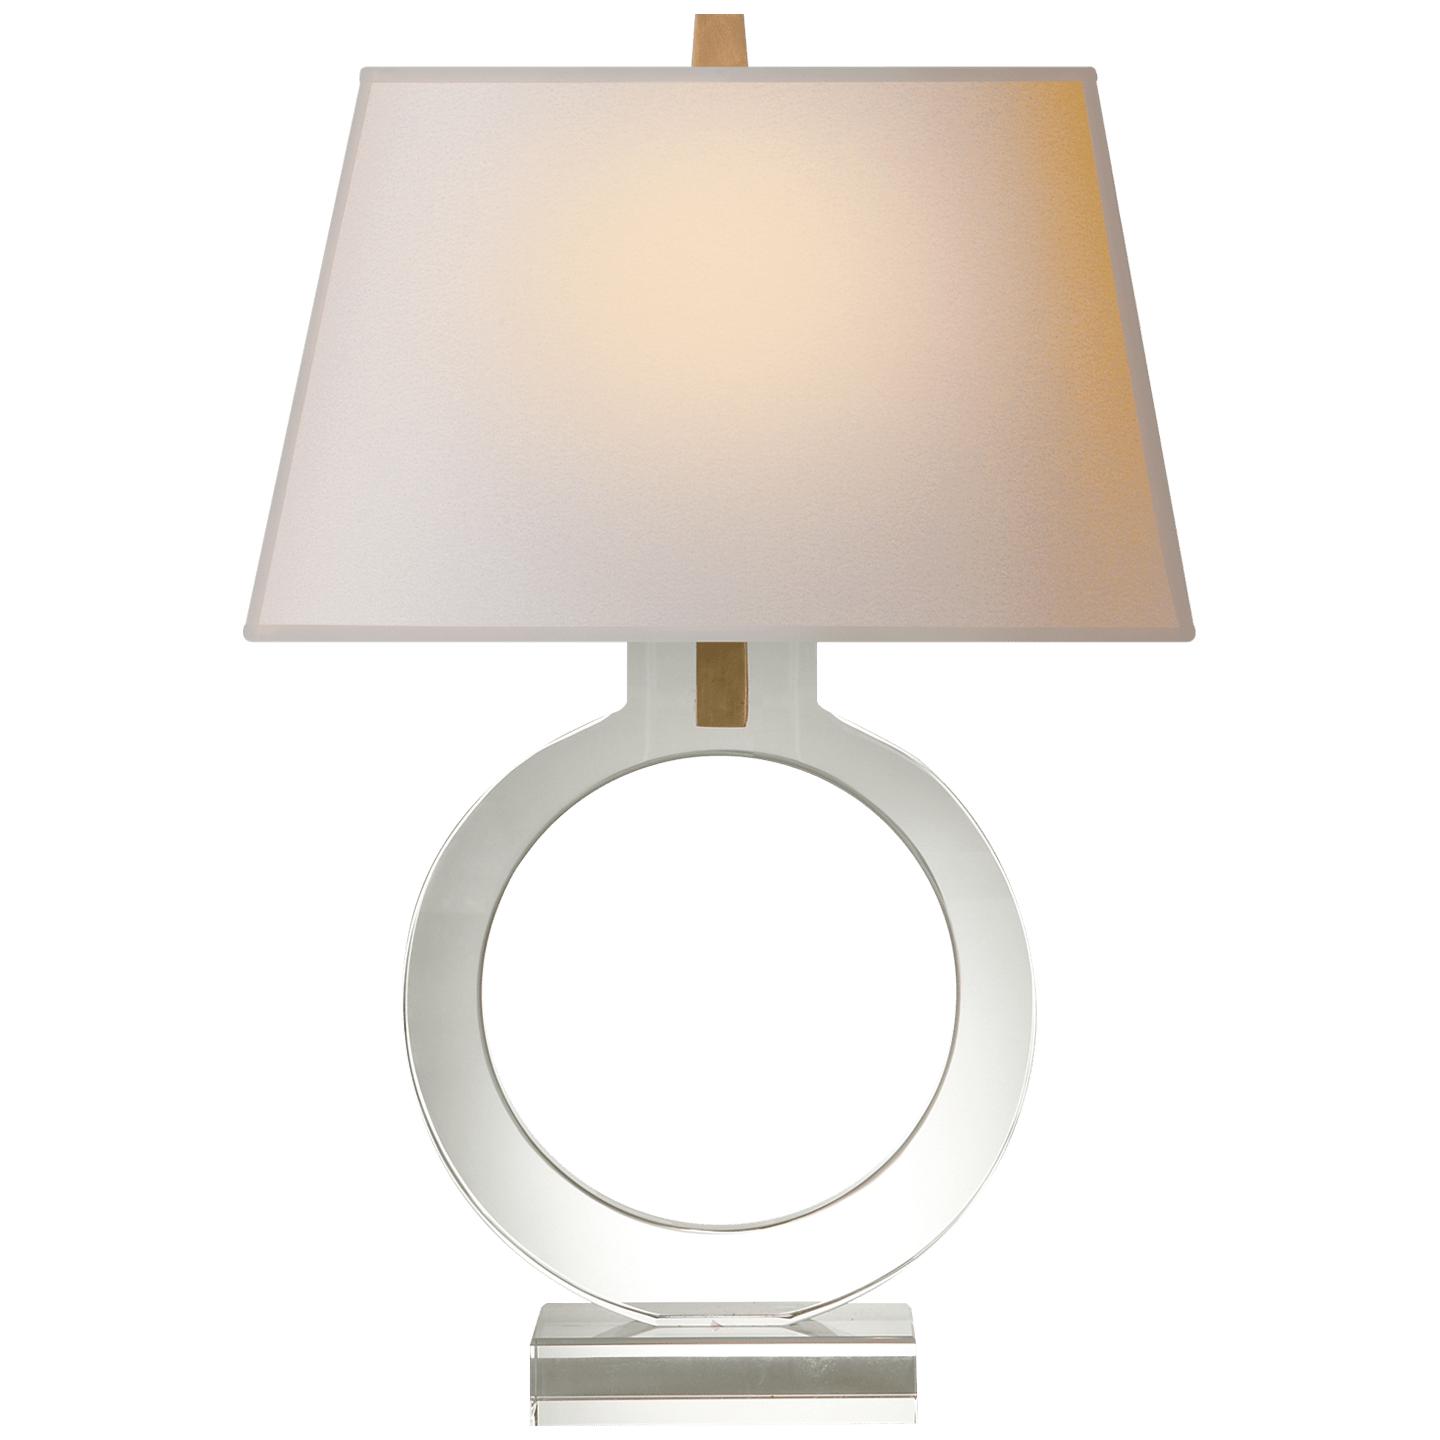 Купить Настольная лампа Ring Form Small Table Lamp в интернет-магазине roooms.ru